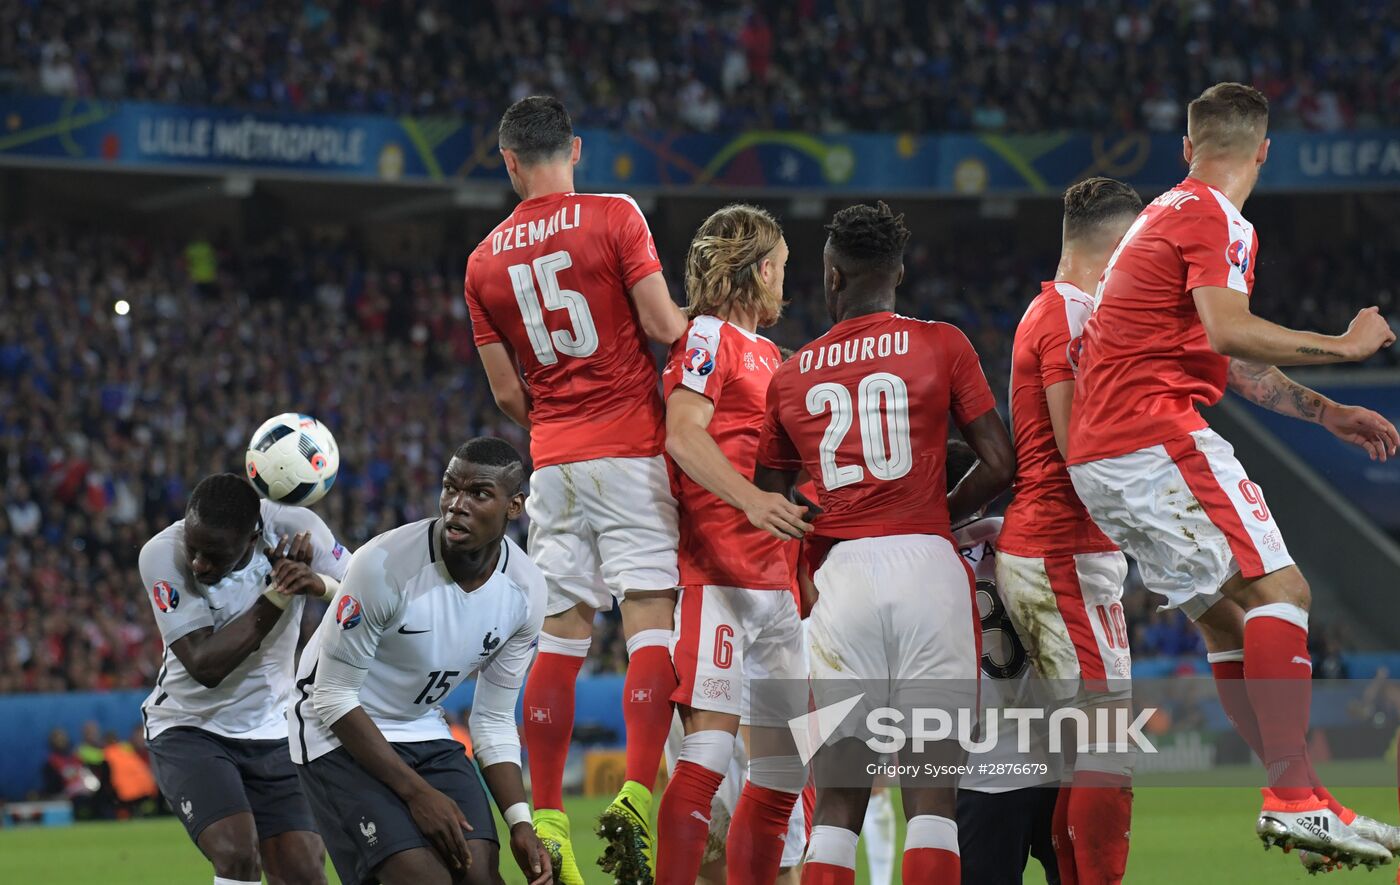 UEFA Euro 2016. Switzerland vs. France